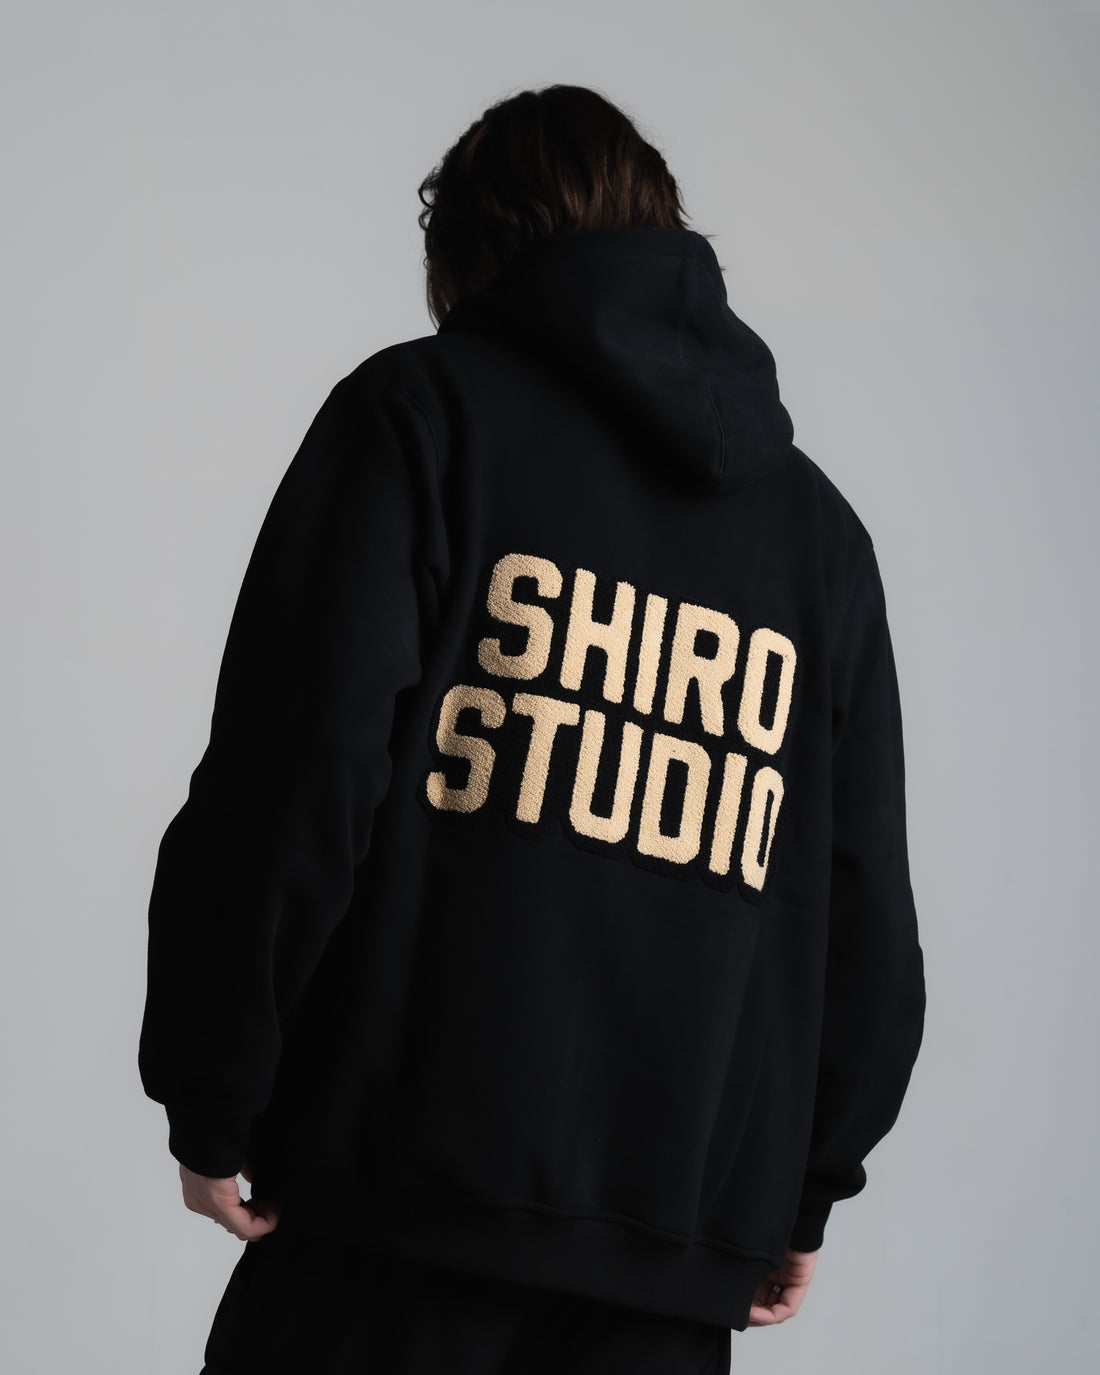 Shiro Studio Founder Hoodie